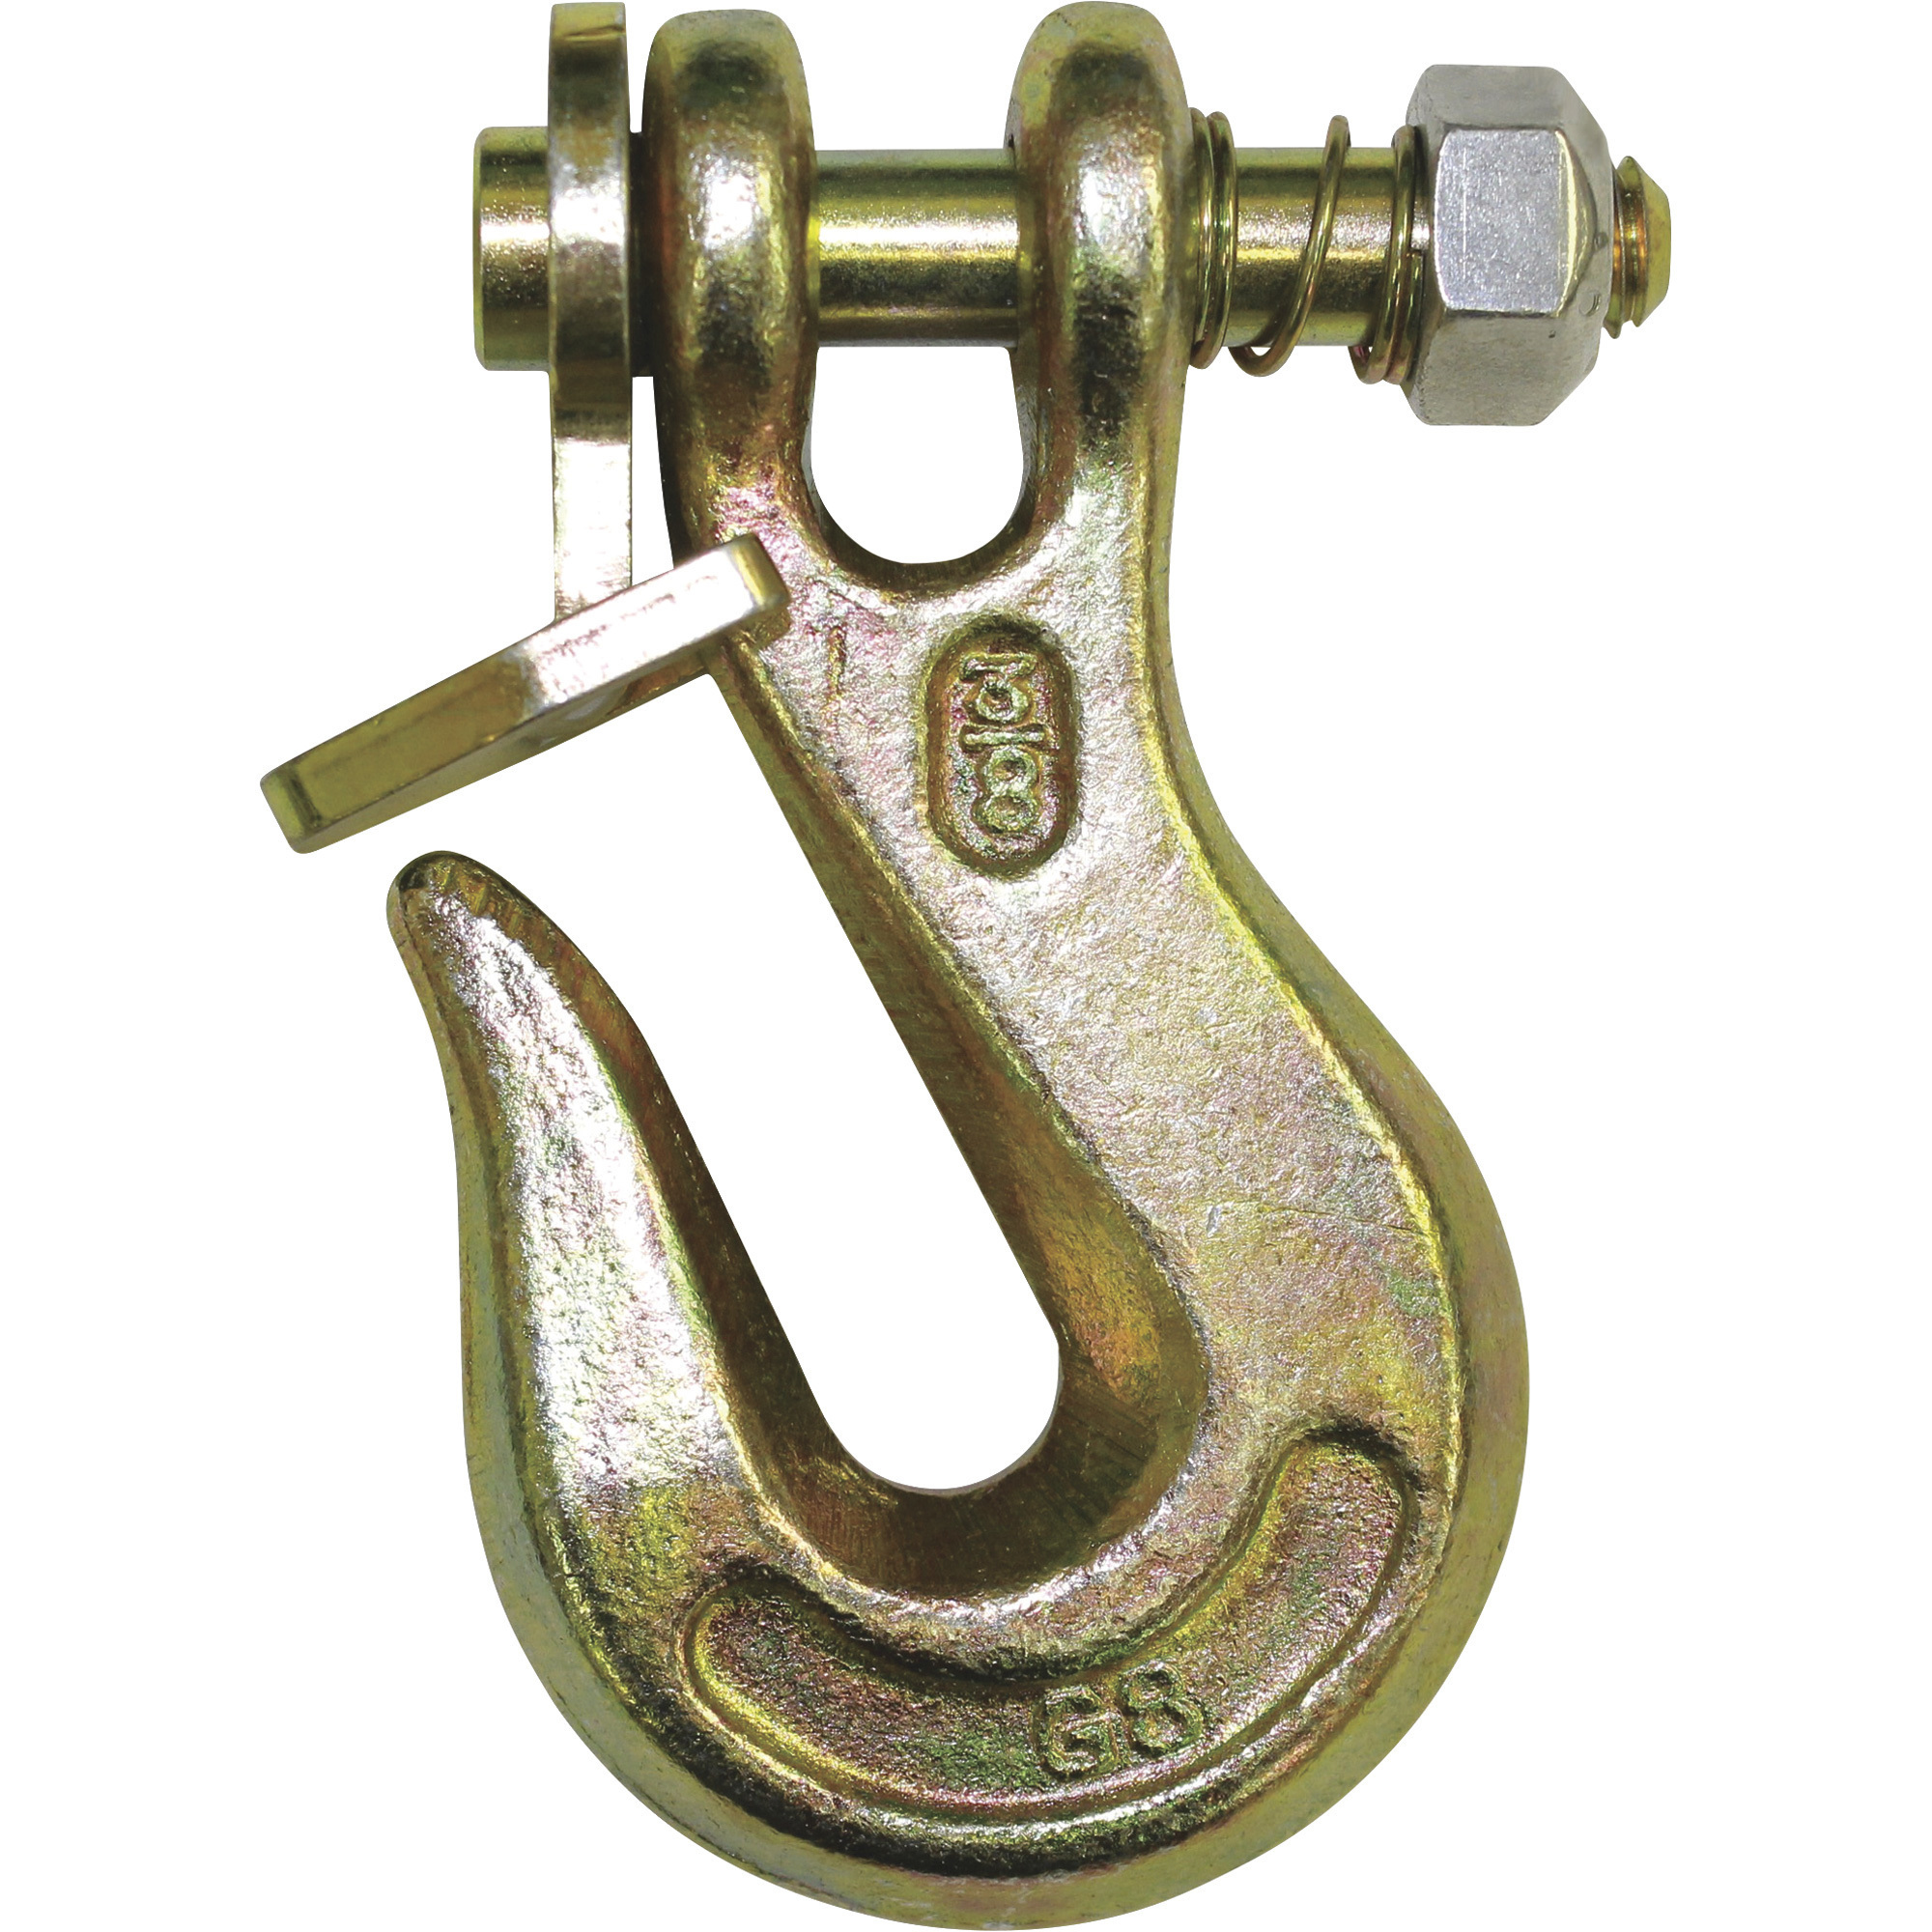 B/A Products Twist Lock Clevis Grab Hook â 3/8Inch, 4.5Inch L, 7,100-Lb. Capacity, Model G8-200-38